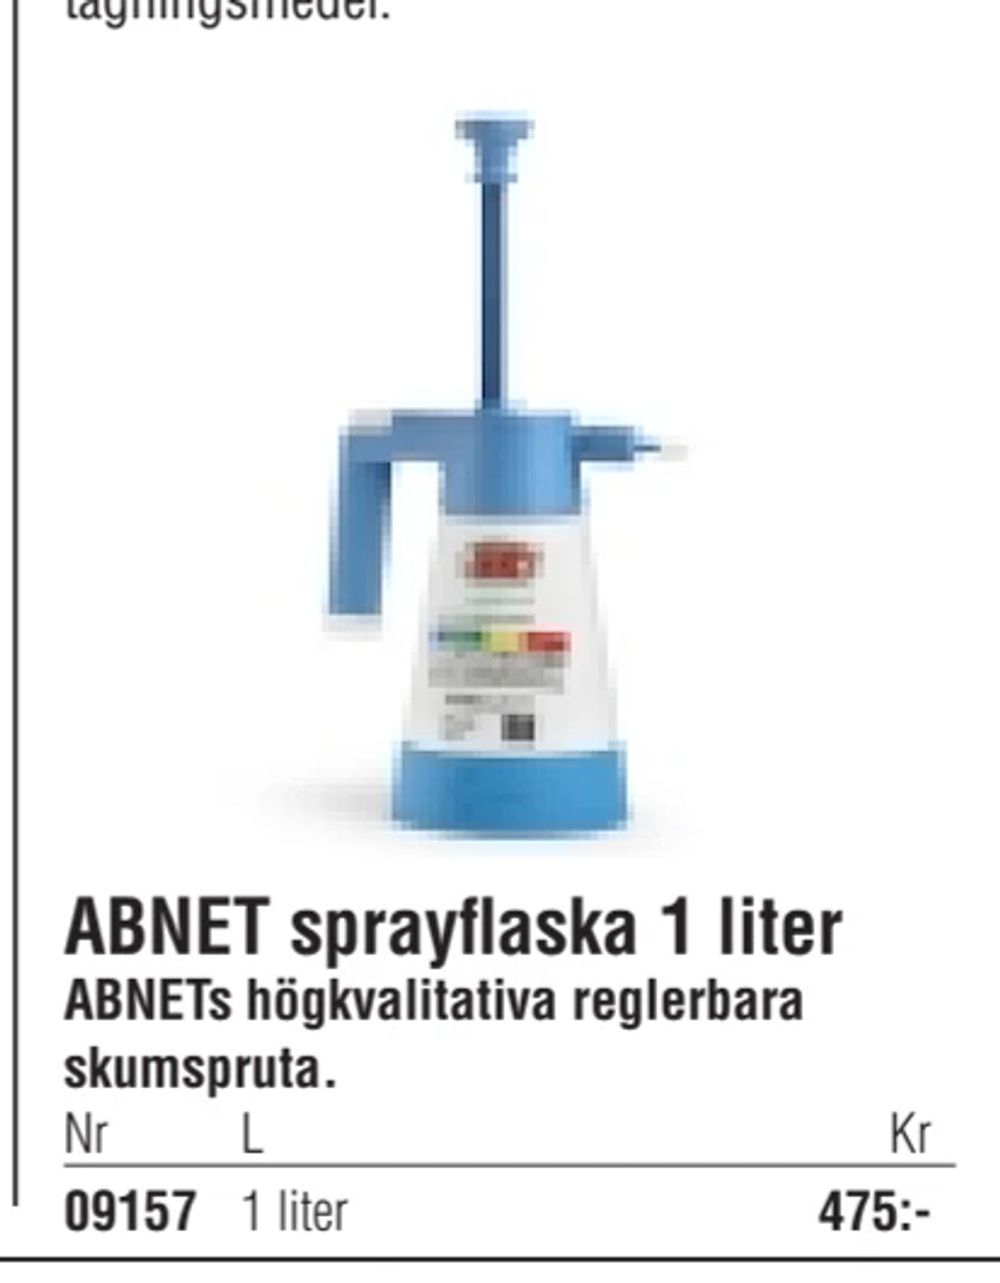 Erbjudanden på ABNET sprayflaska 1 liter från Erlandsons Brygga för 475 kr